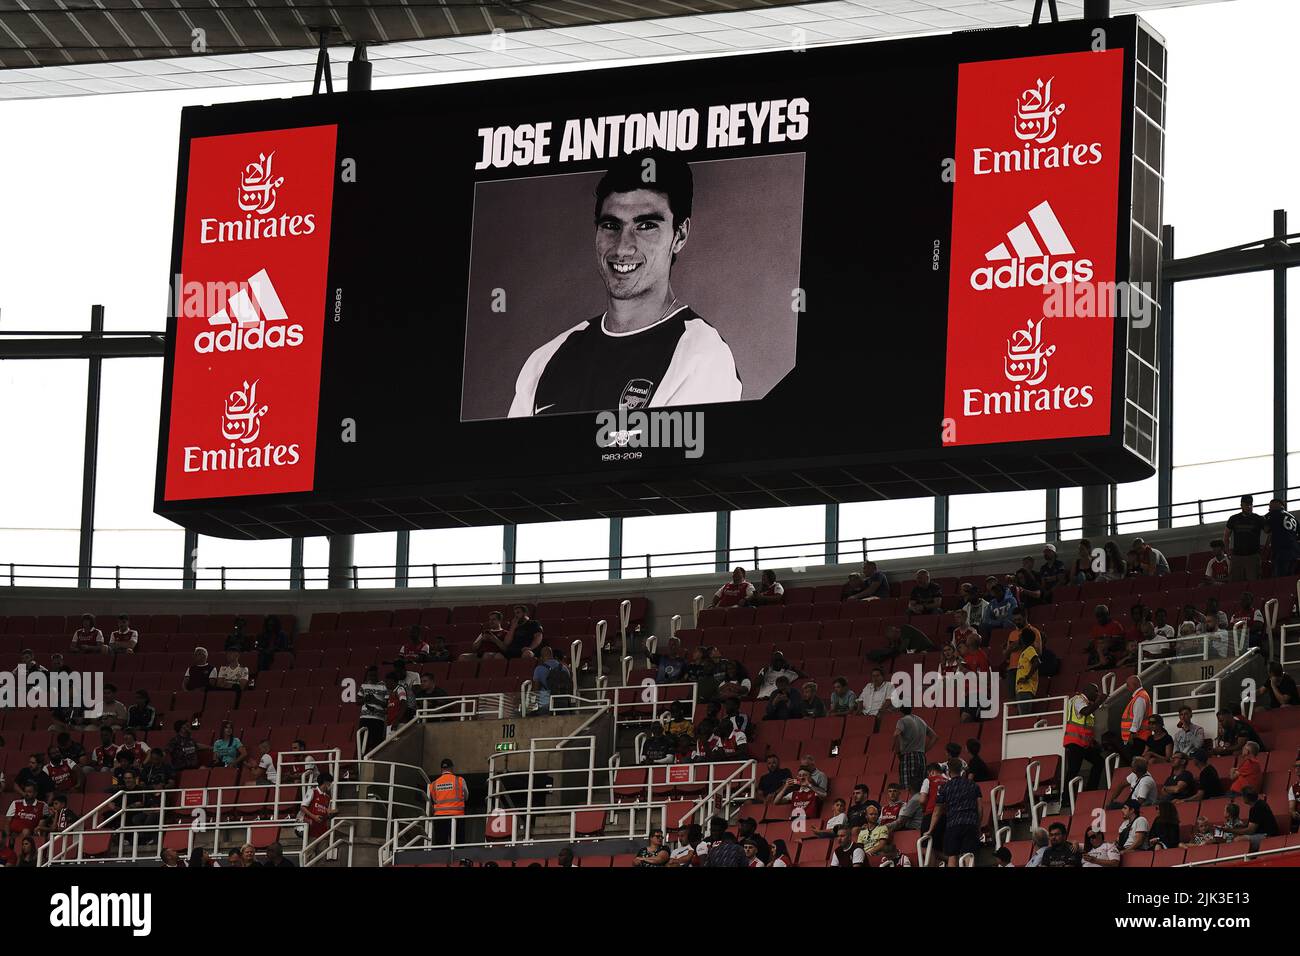 Un hommage à l'ancien joueur d'Arsenal et de Séville, José Antonio Reyes, est affiché sur grand écran avant la finale de la coupe Emirates au stade Emirates, à Londres. Date de la photo: Samedi 30 juillet 2022. Banque D'Images